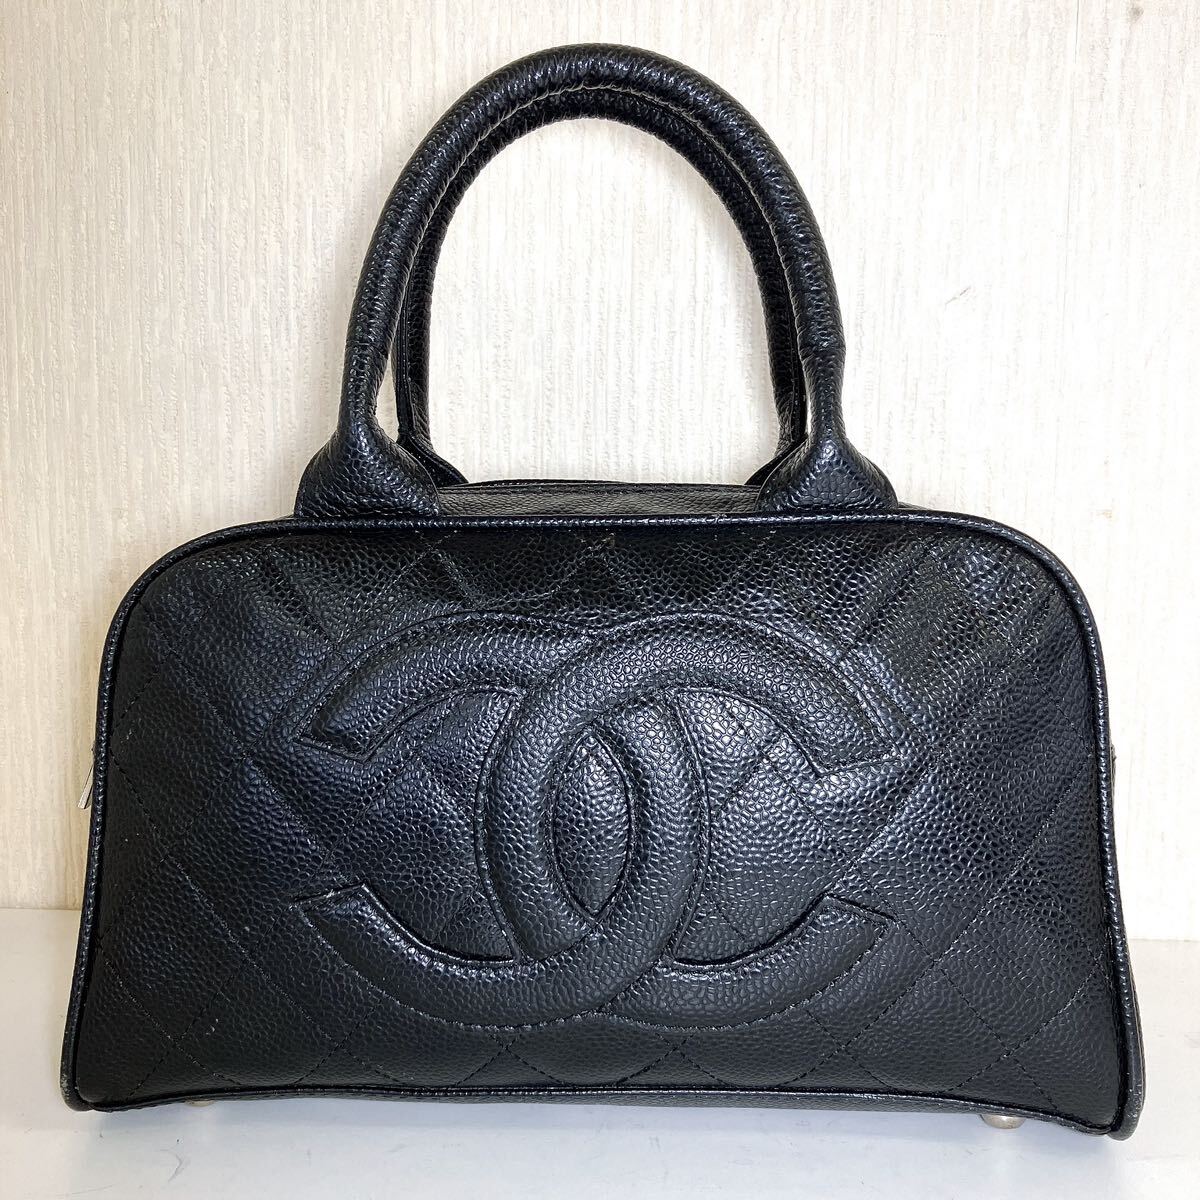 CHANEL シャネル マトラッセ キャビアスキン ハンドバッグ きれい 美品 ココマーク 黒 高級 ブランド おすすめ 大人気 ヴィンテージ レアの画像1